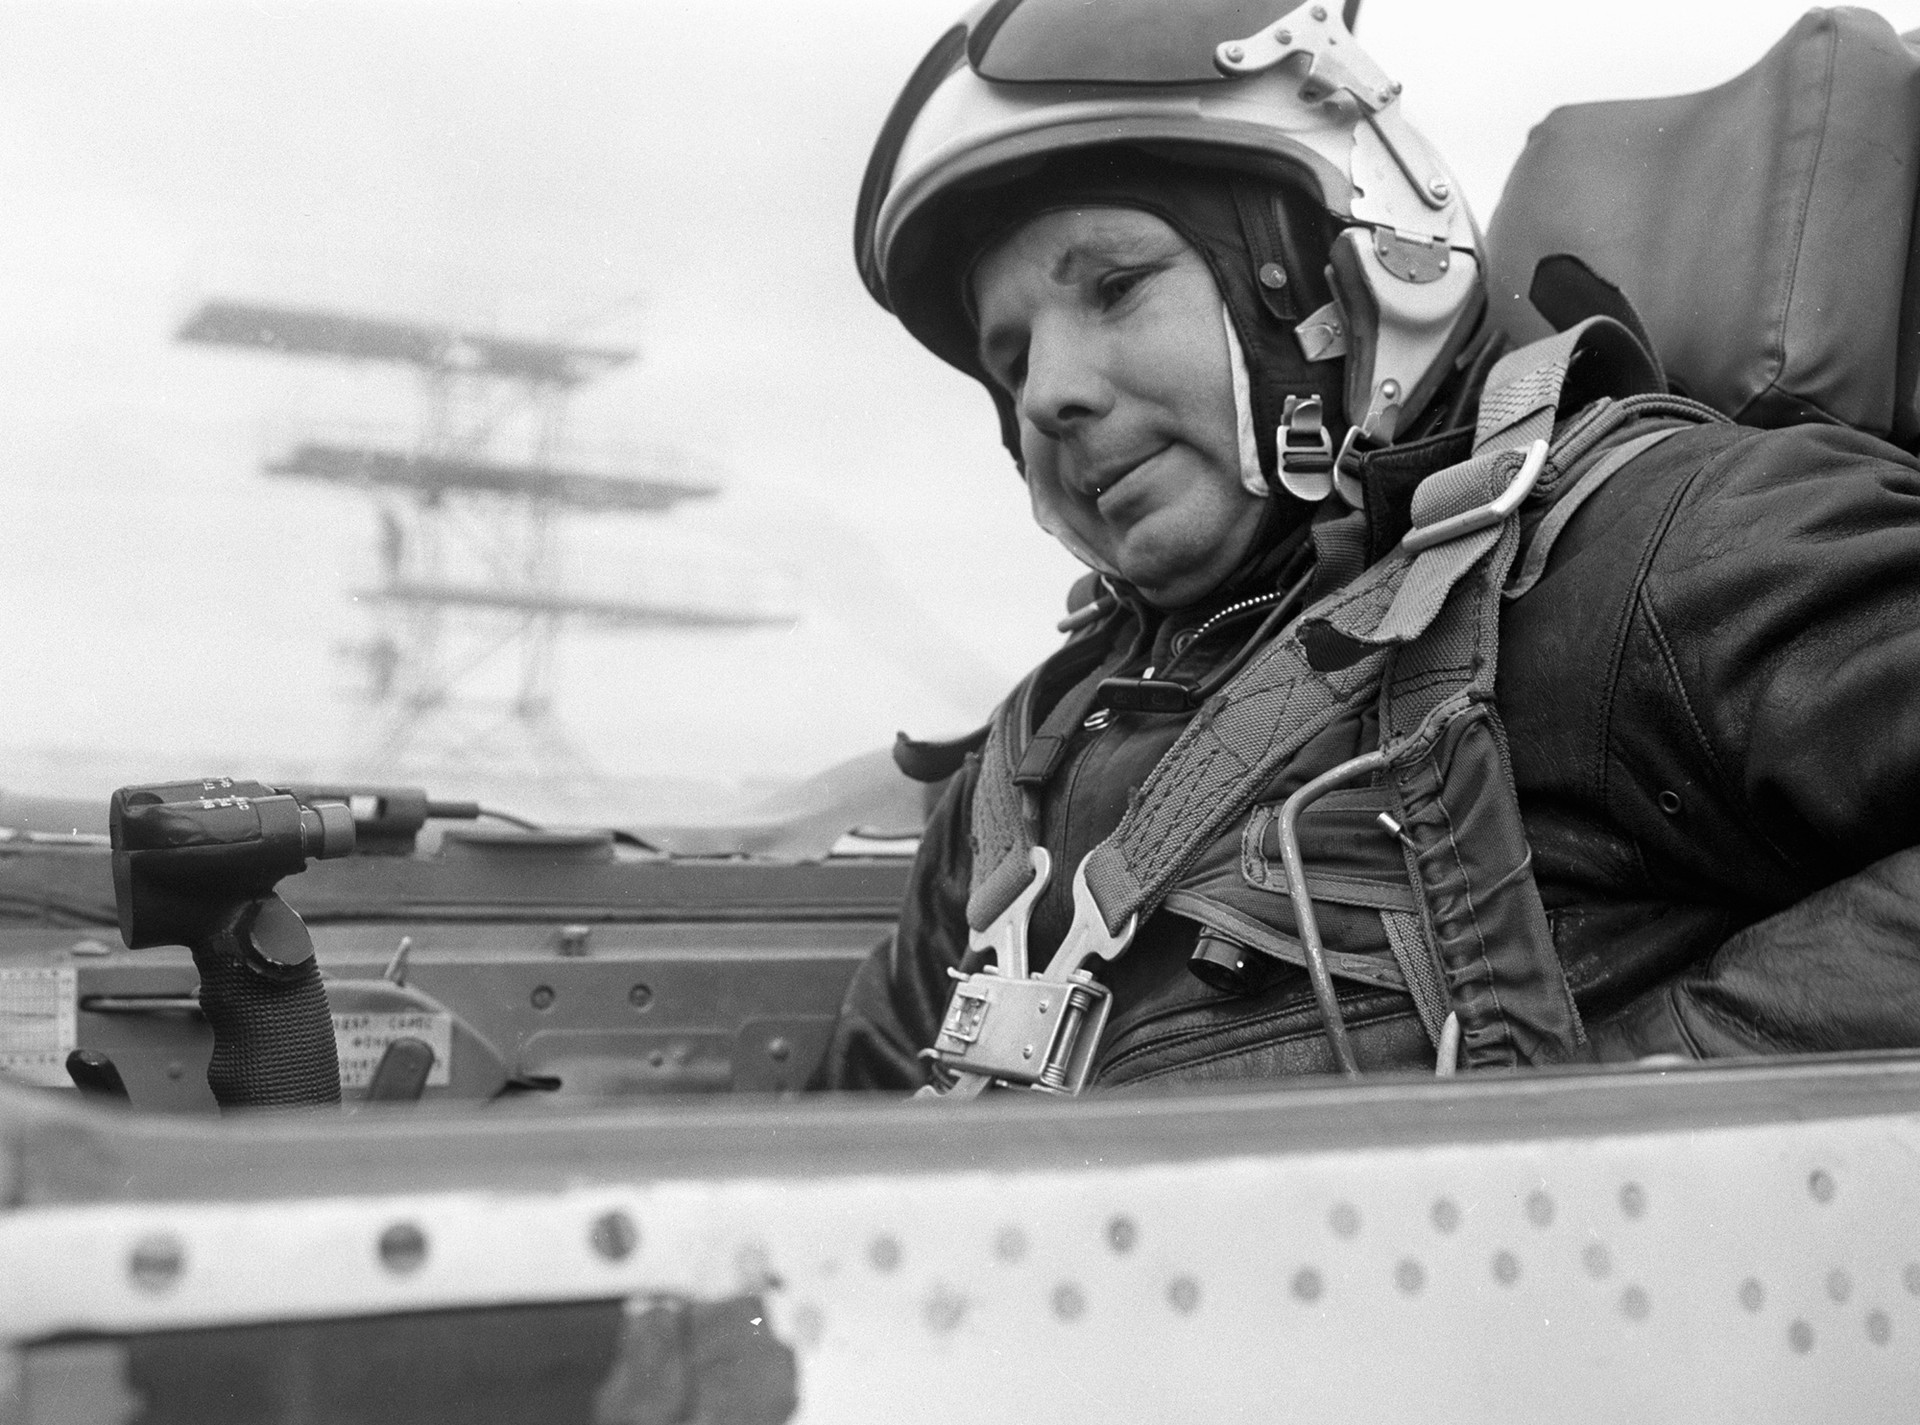 Јуриј Гагарин се подготвува да изврши задача на суперсоничниот млазен ловец МиГ-21, 1 октомври 1967 година